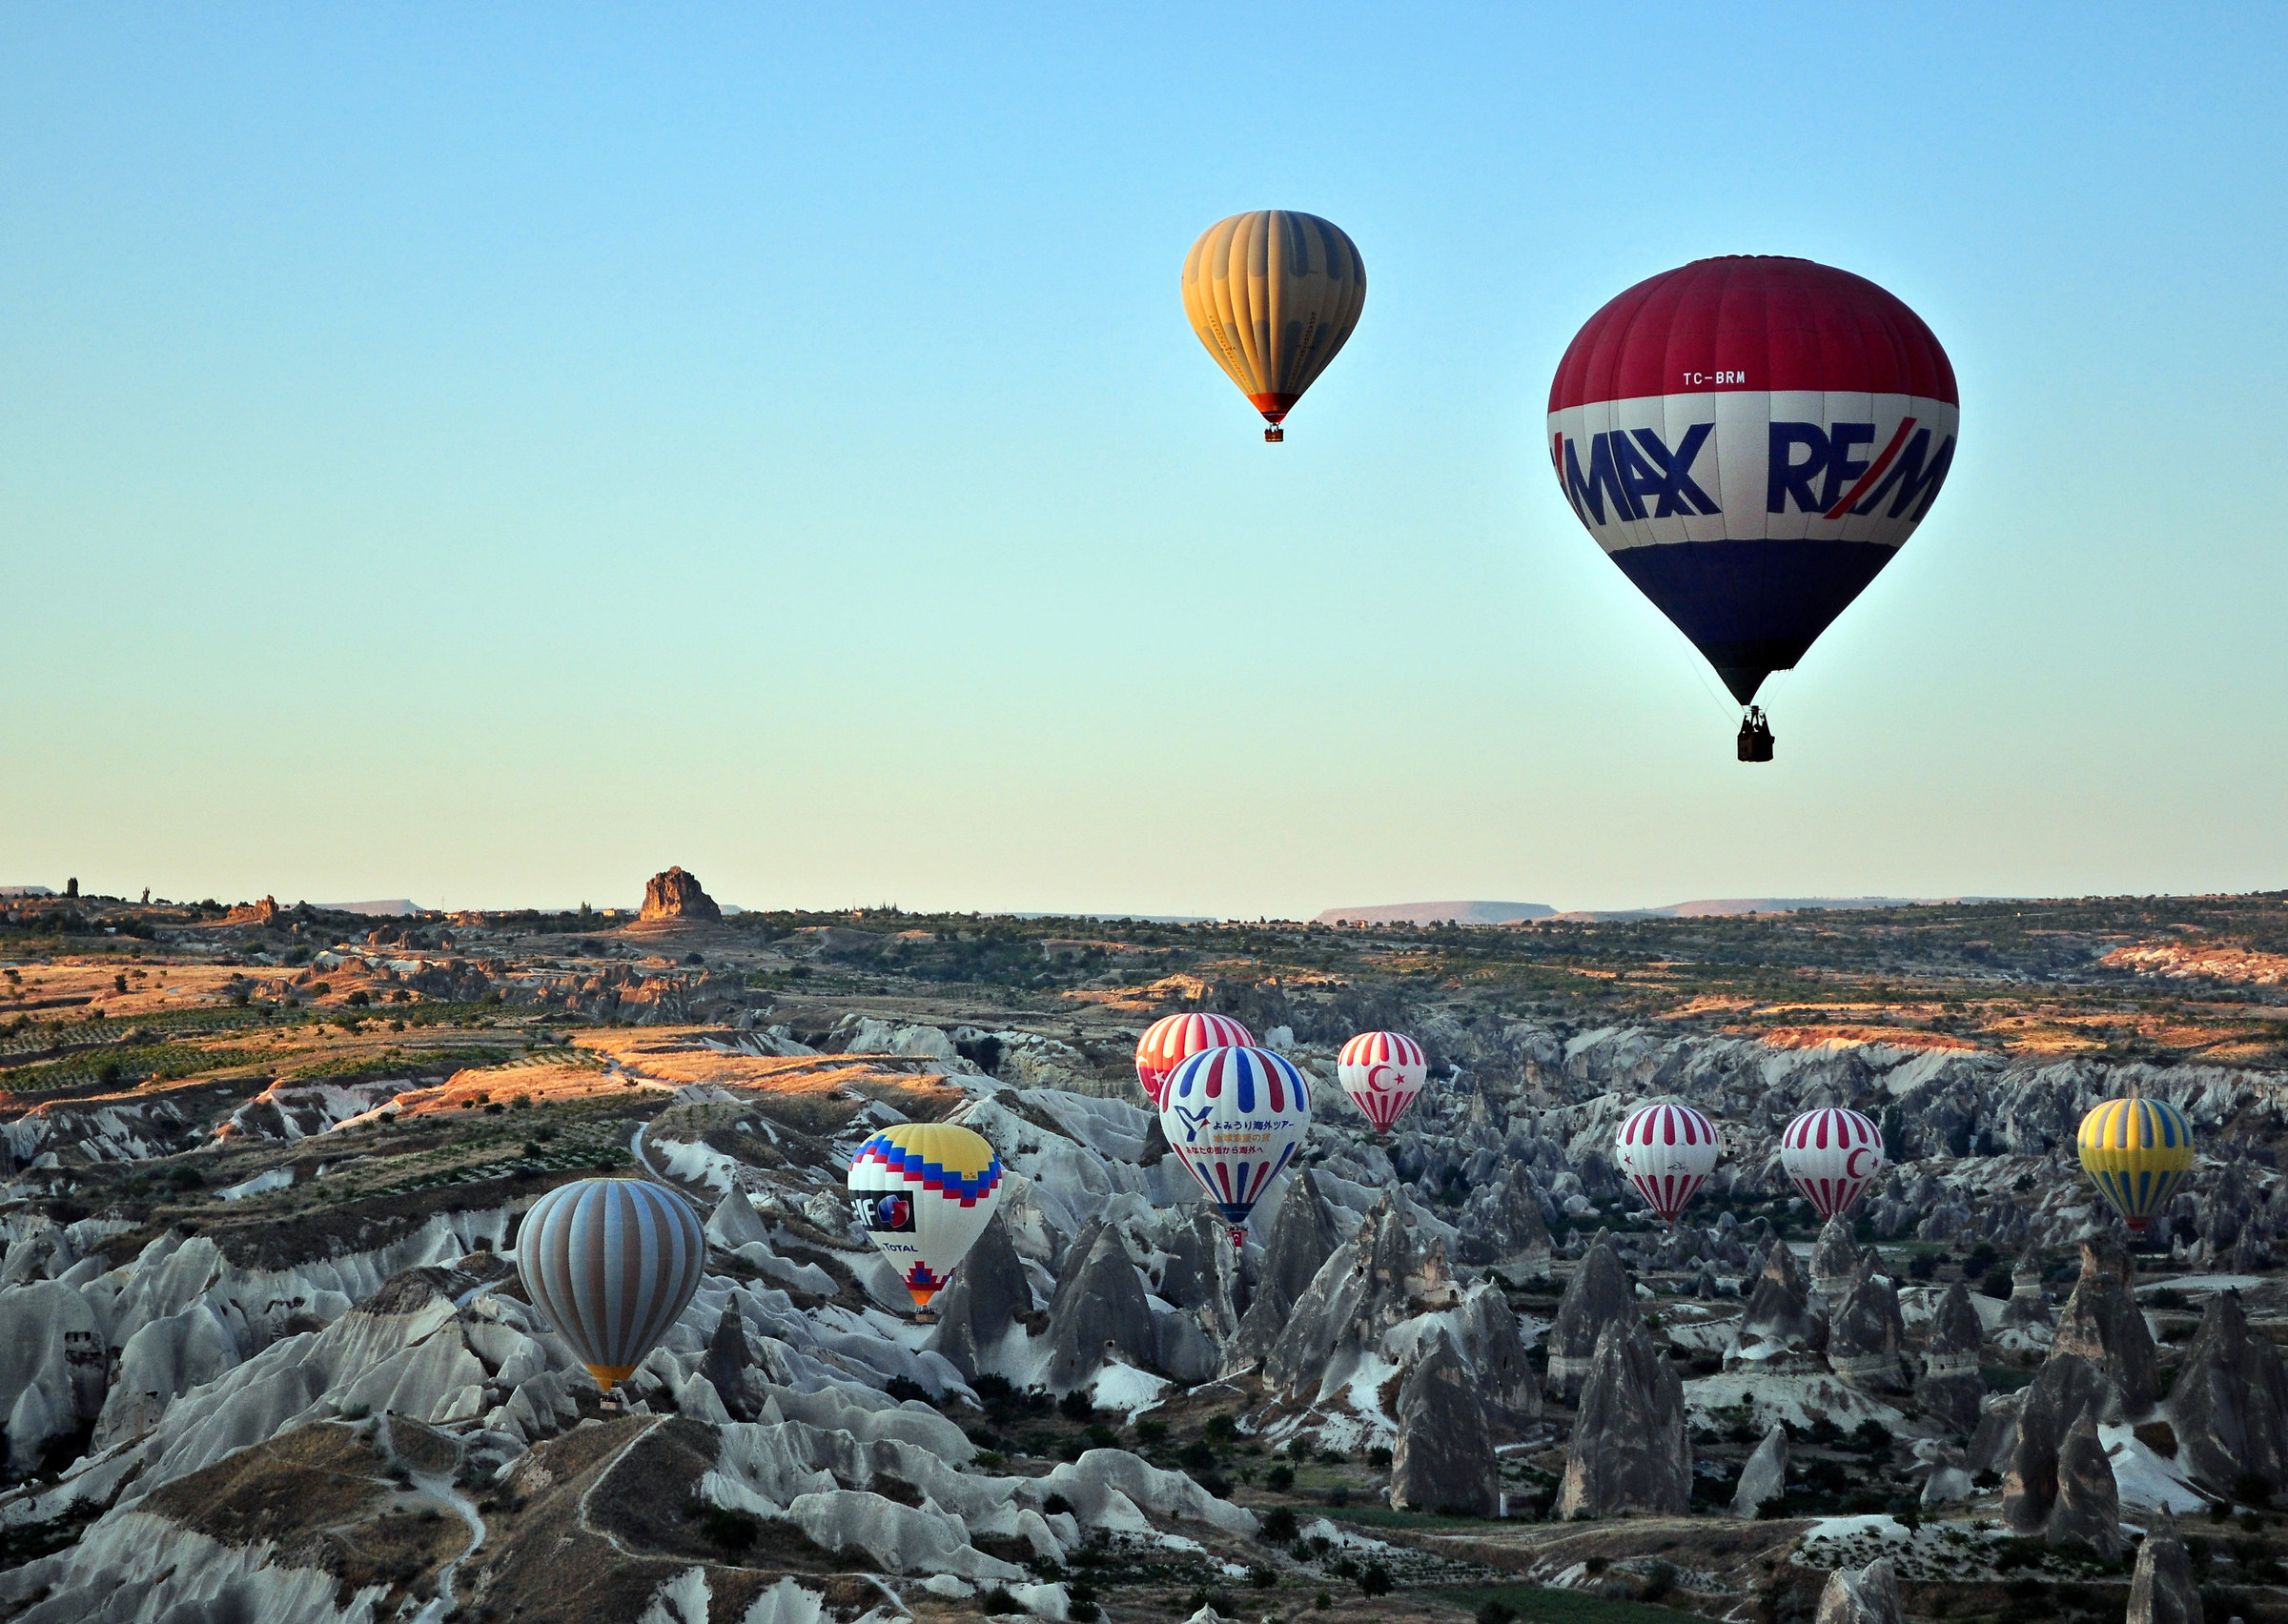 Cappadocia in flight...